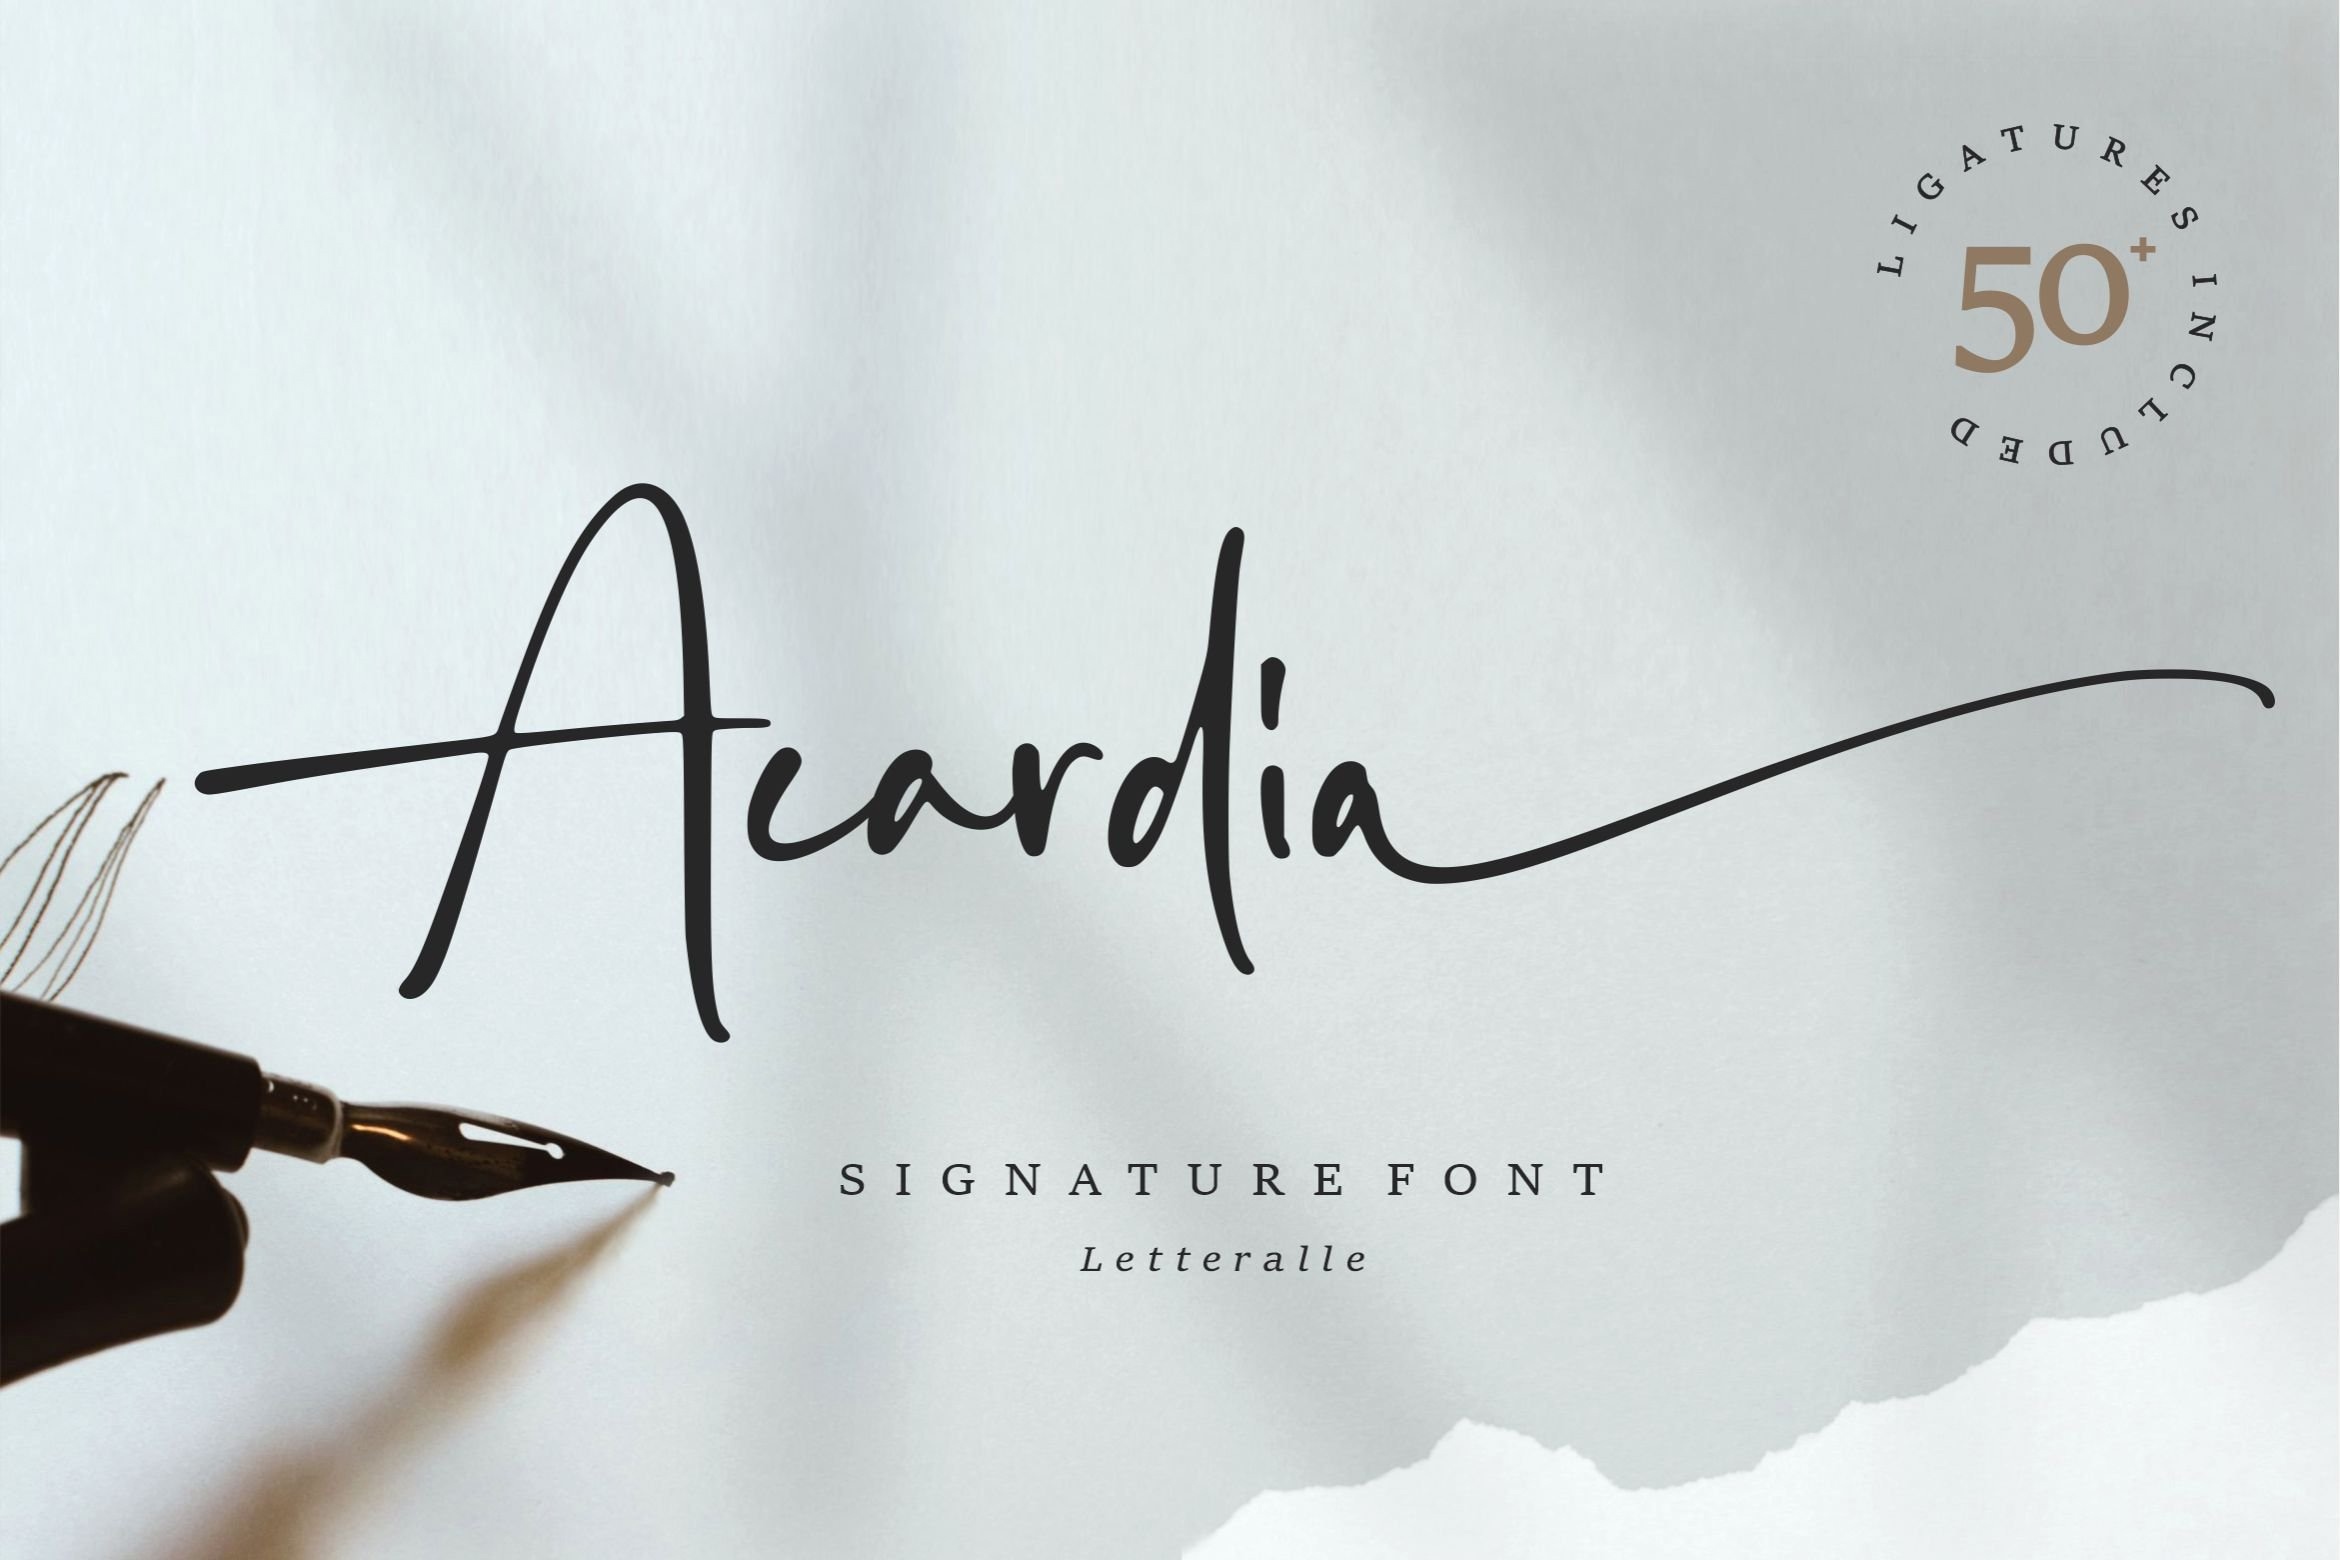 Beispiel einer Acardia Signature-Schriftart